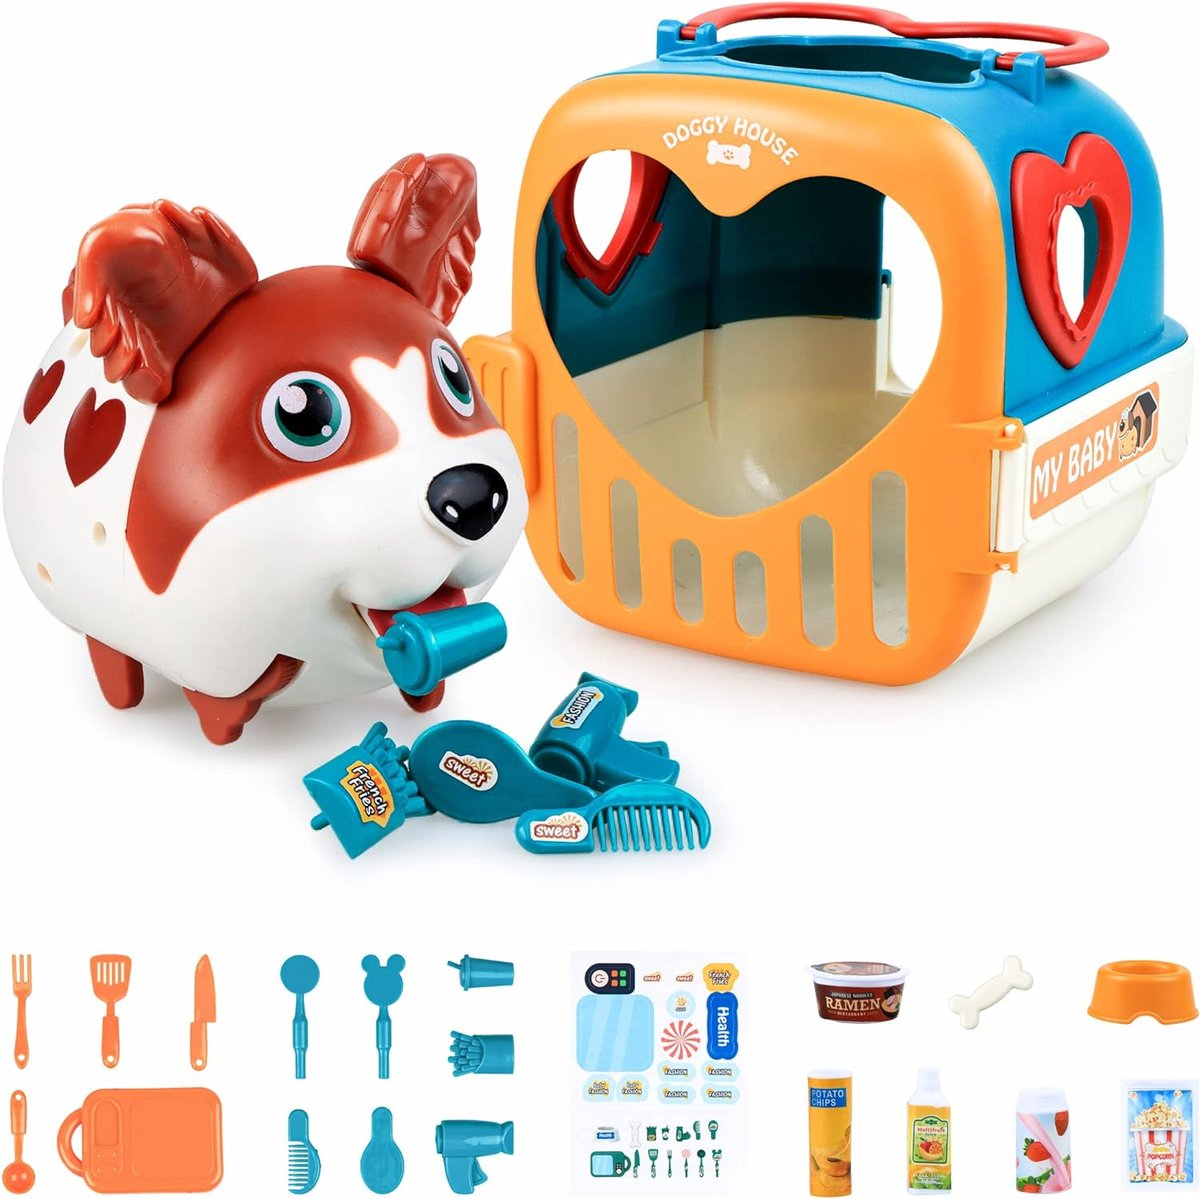 Kizmyee Elektrisch hondenspeelgoed voor kinderen Set 22PCS - Interactief speelgoed met loopfunctie, blaffen, geluidsregeling, puppy en accessoires - Geschikt voor meisjes en jongens van 2 3 4 5 jaar